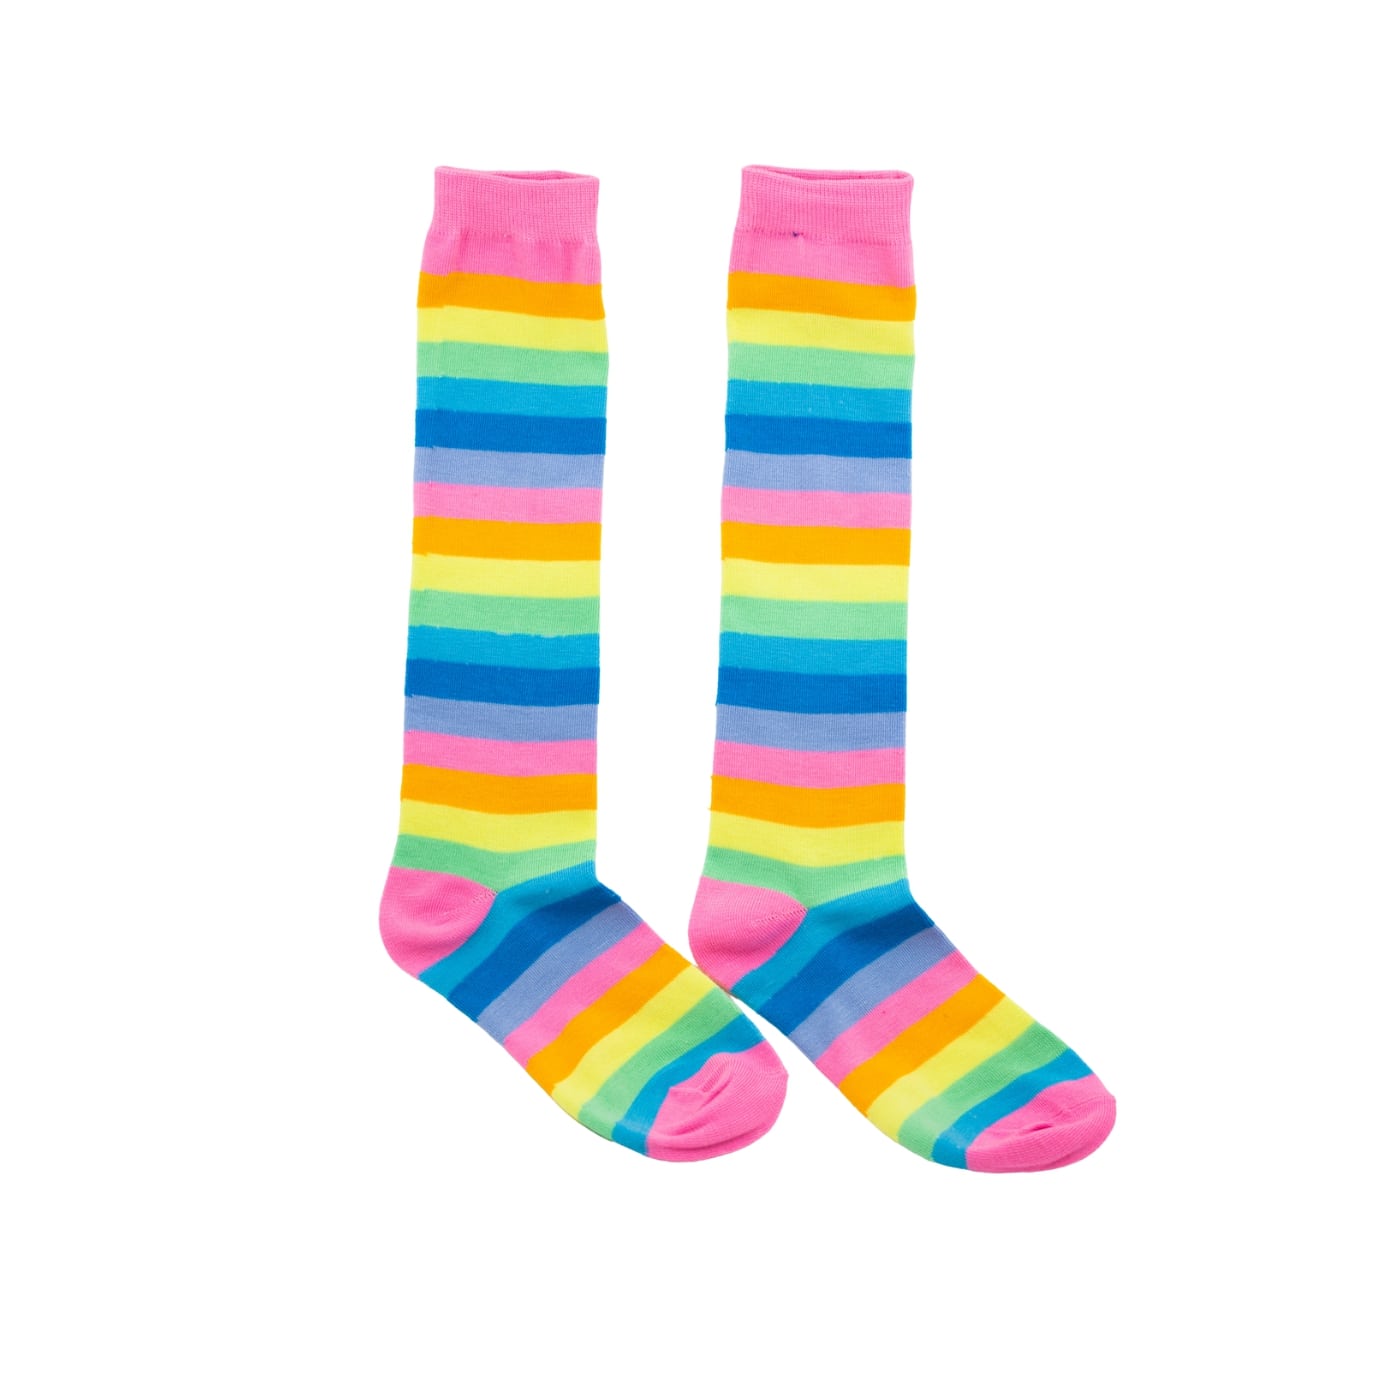 Pink Rainbow Stripe Knee High Socks by RainbowsAndFairies.com.au (Stripe Long Socks - Rainbow - Stockings - Colourful Socks - Vintage Inspired) - SKU: FW_SOCKS_RAINB_PNK - Pic-02